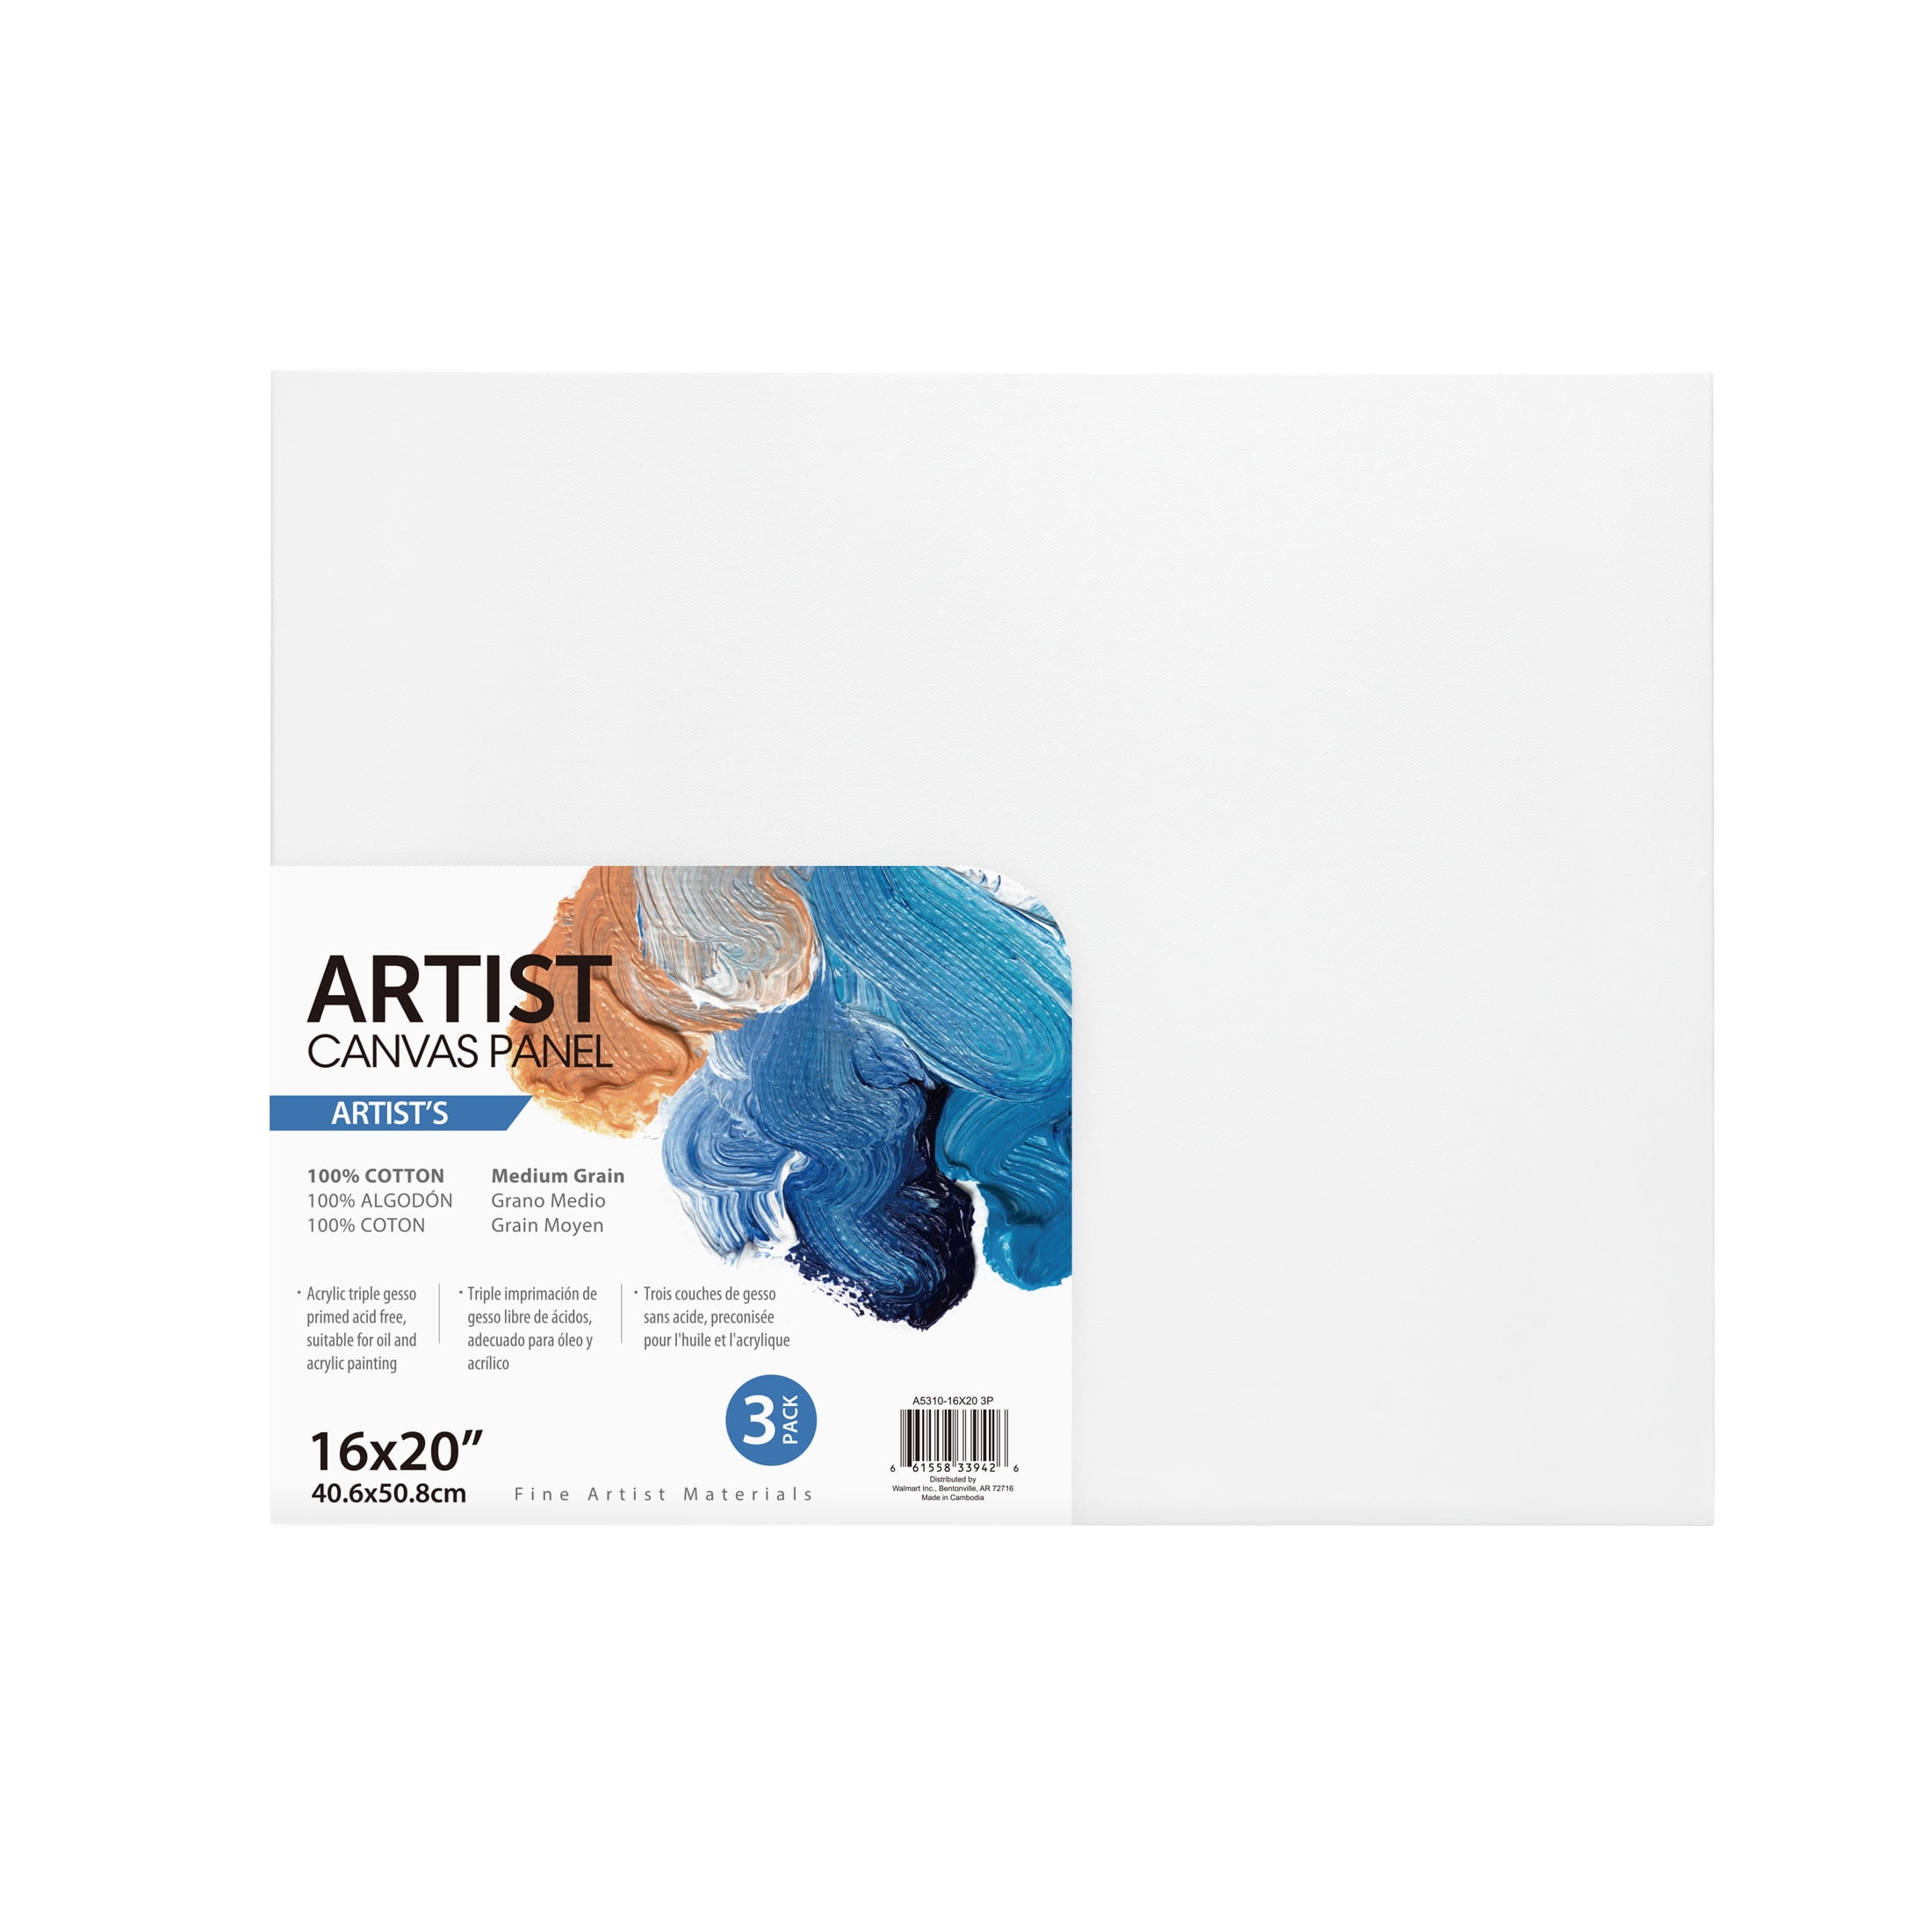 Artist Canvas Panel, 100% Cotton Acid Free Canvas, 16"X20", 3 Pieces